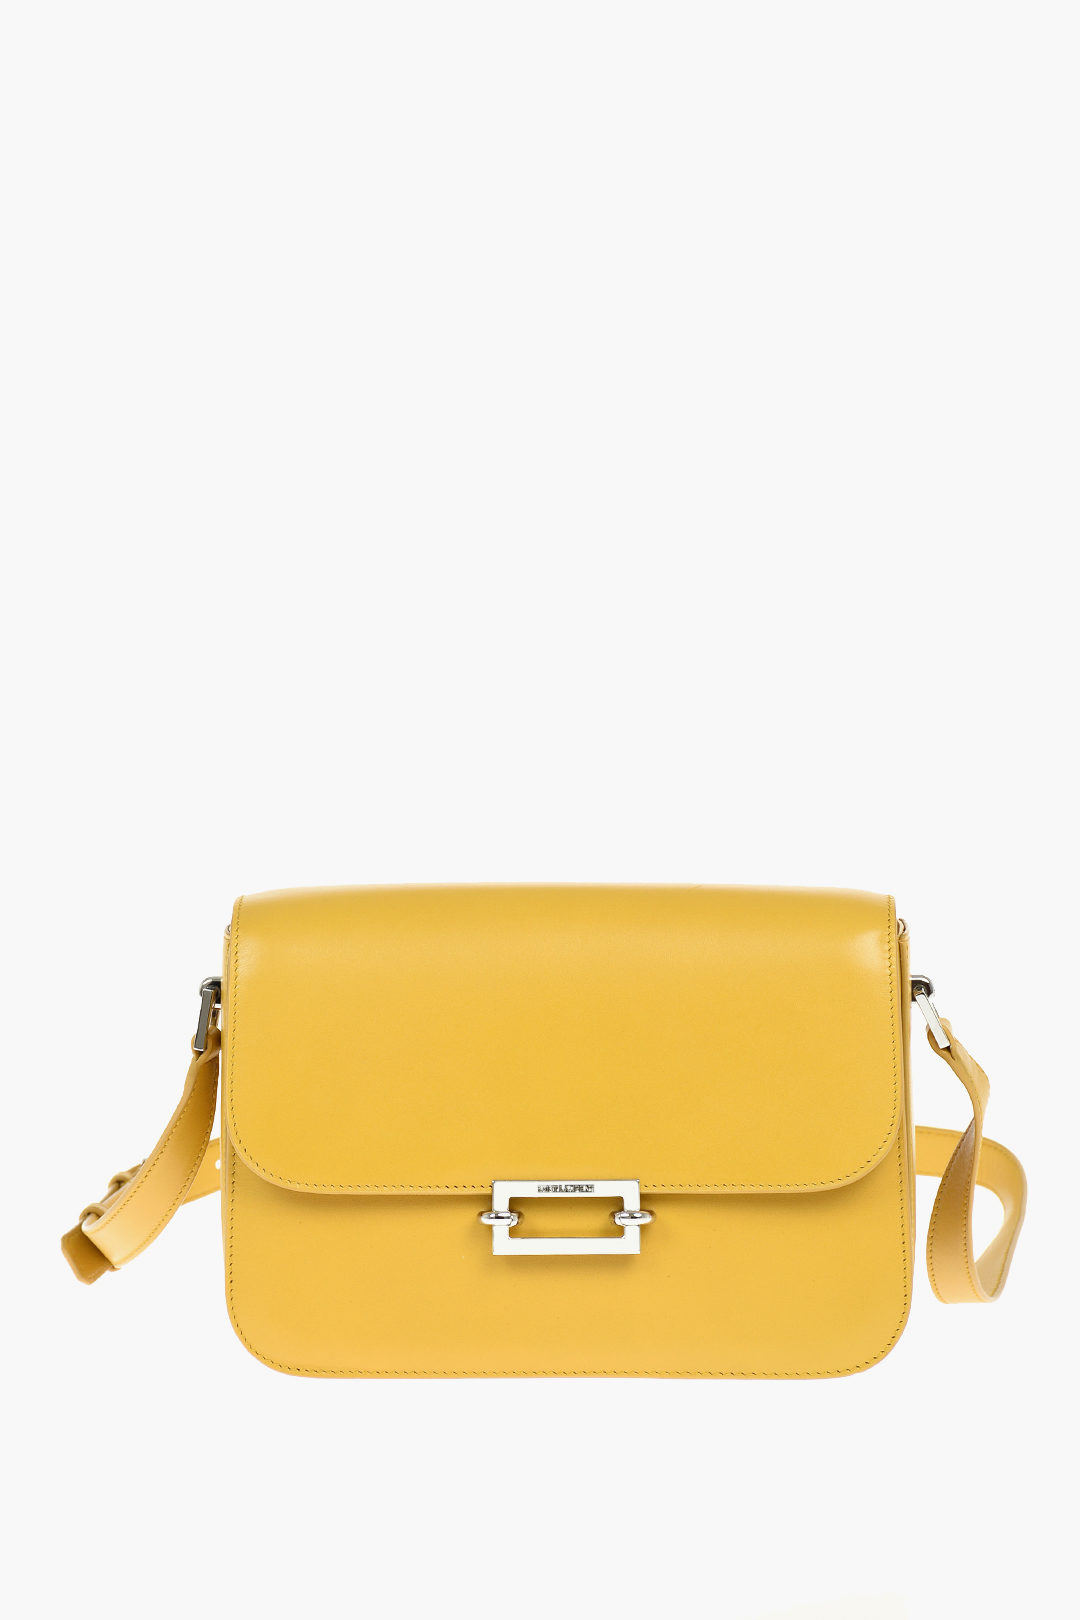 Alaïa, Le Coeur yellow leather crossbody bag